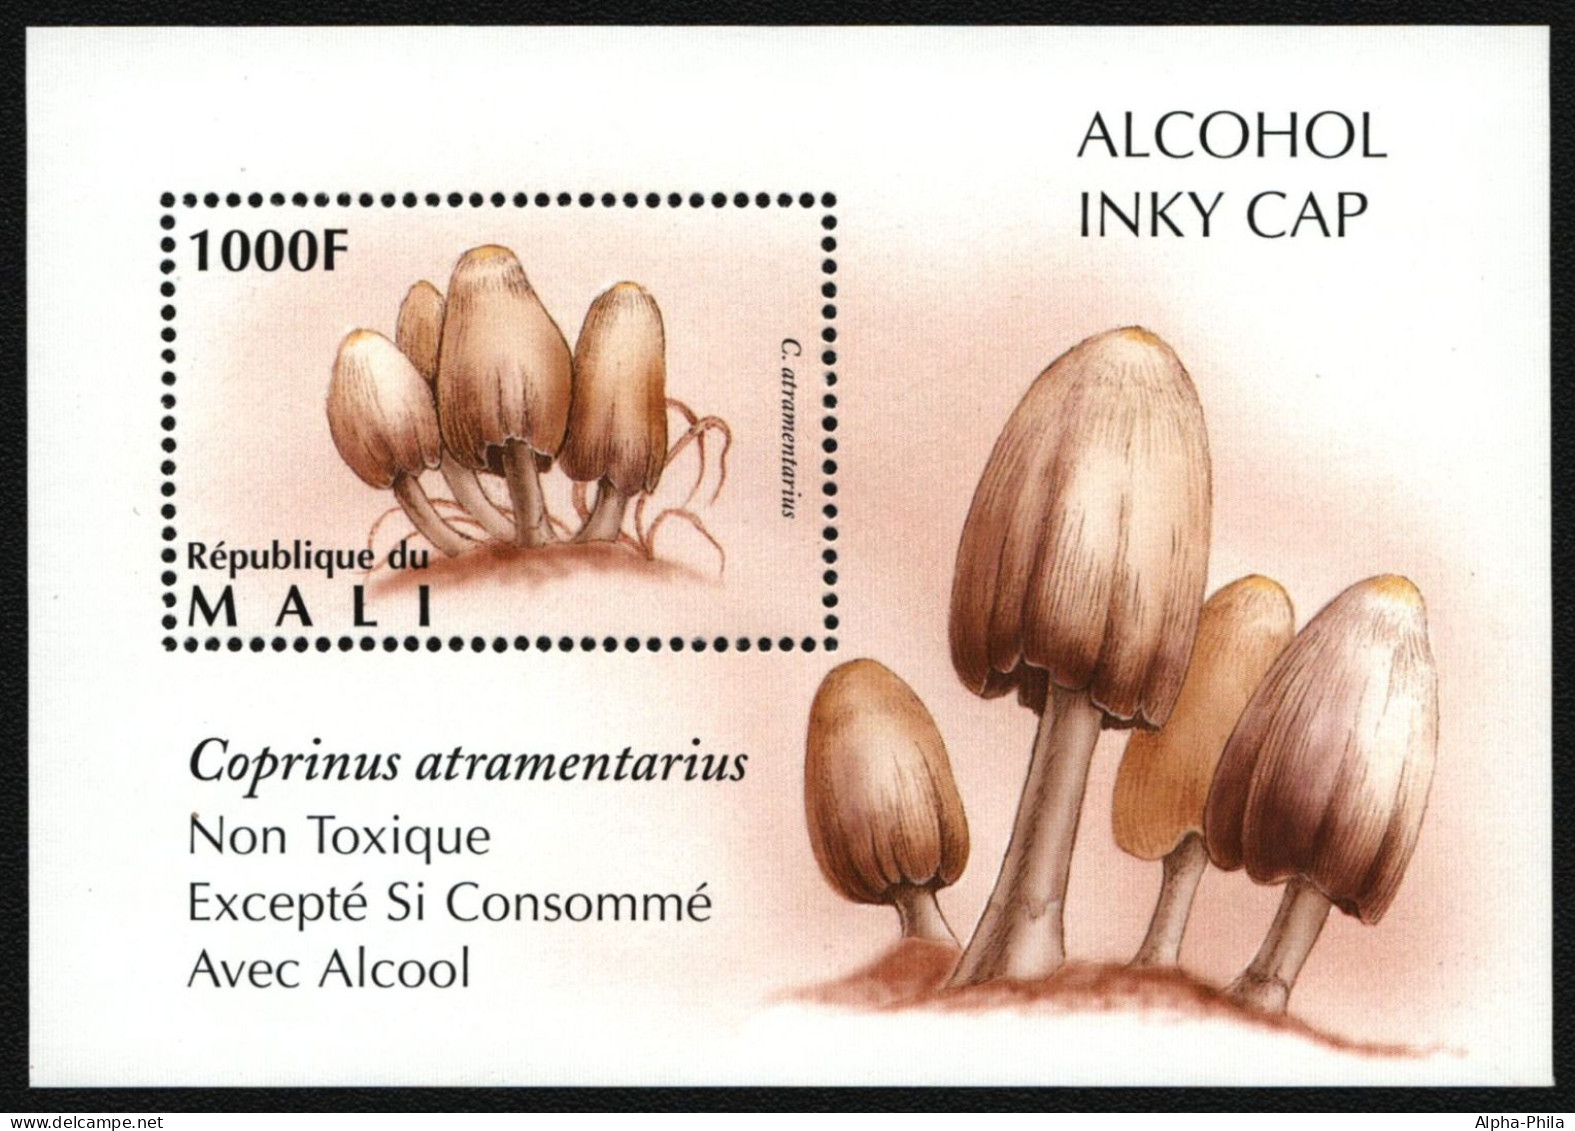 Mali 1996 - Mi-Nr. Block 78 ** - MNH - Pilze / Mushrooms - Mali (1959-...)